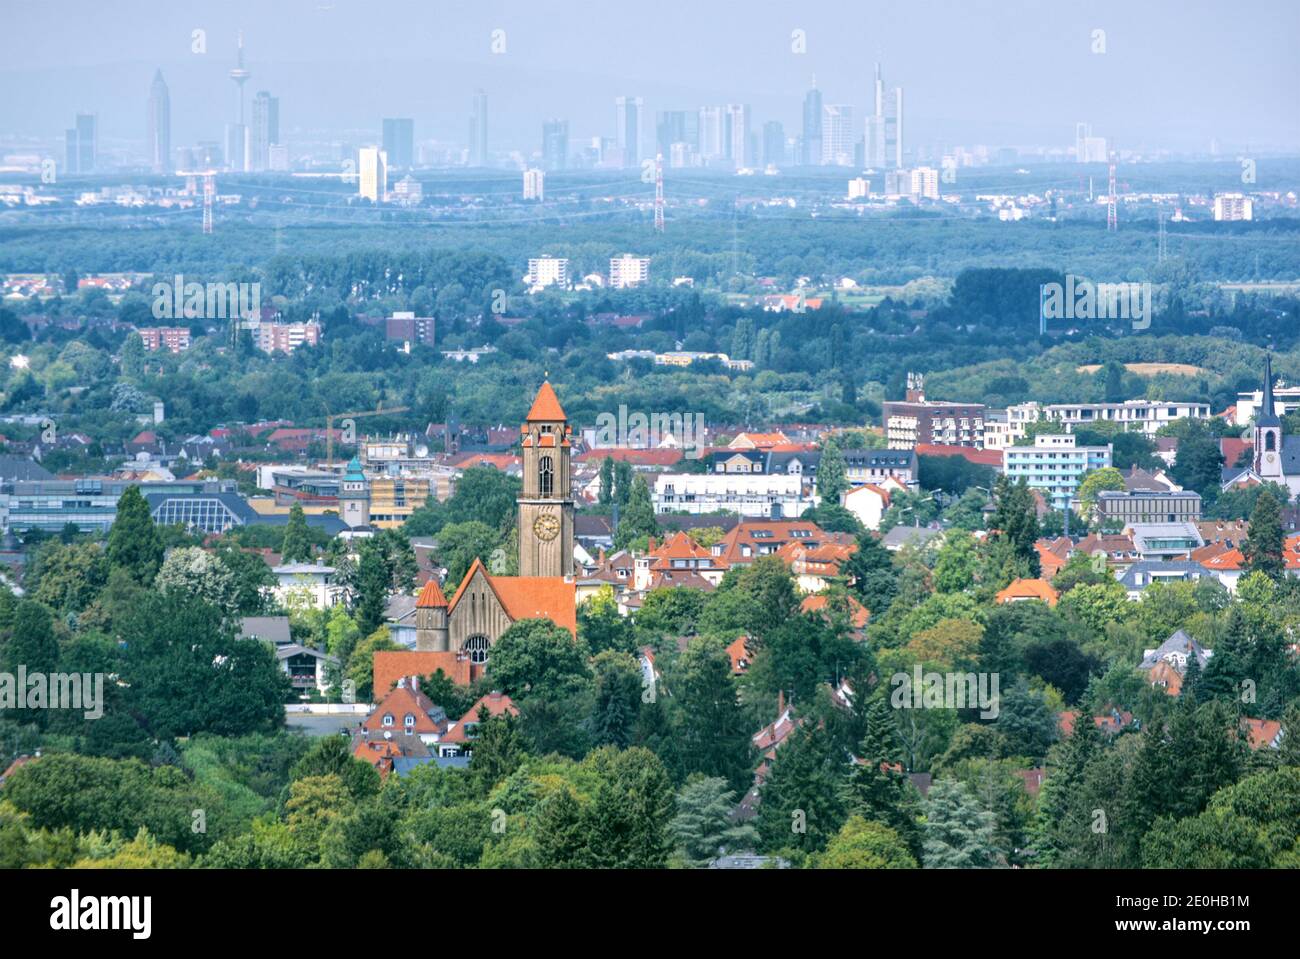 Paisaje urbano de Darmstadt (Alemania) y el horizonte de Frankfurt am Principal en el fondo Foto de stock